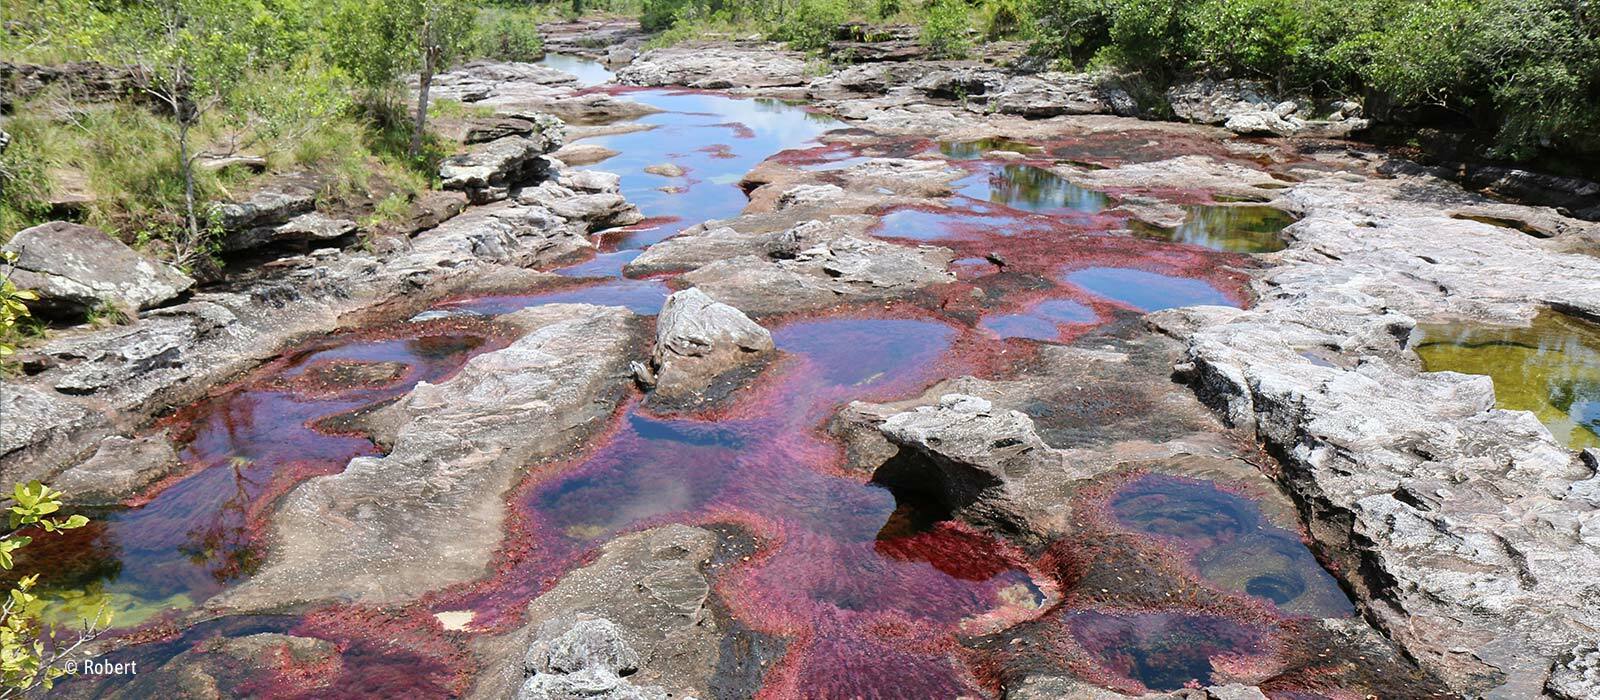 Caño Cristales : rivières multicolores